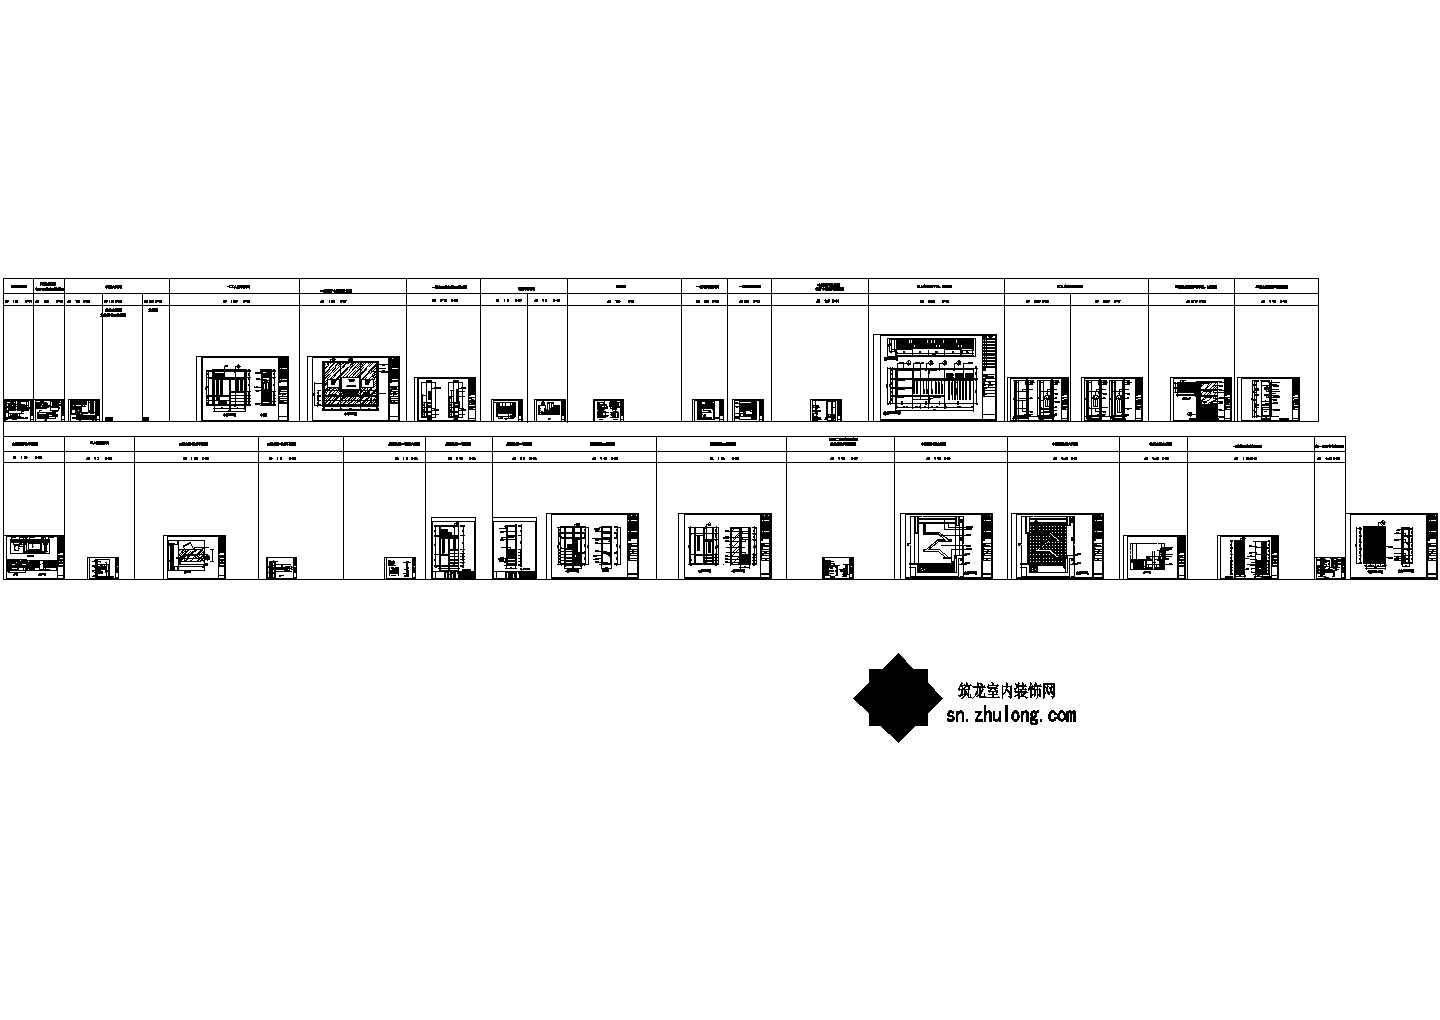 西安知名地产集团豪华社区三层别墅样板间室内装修图